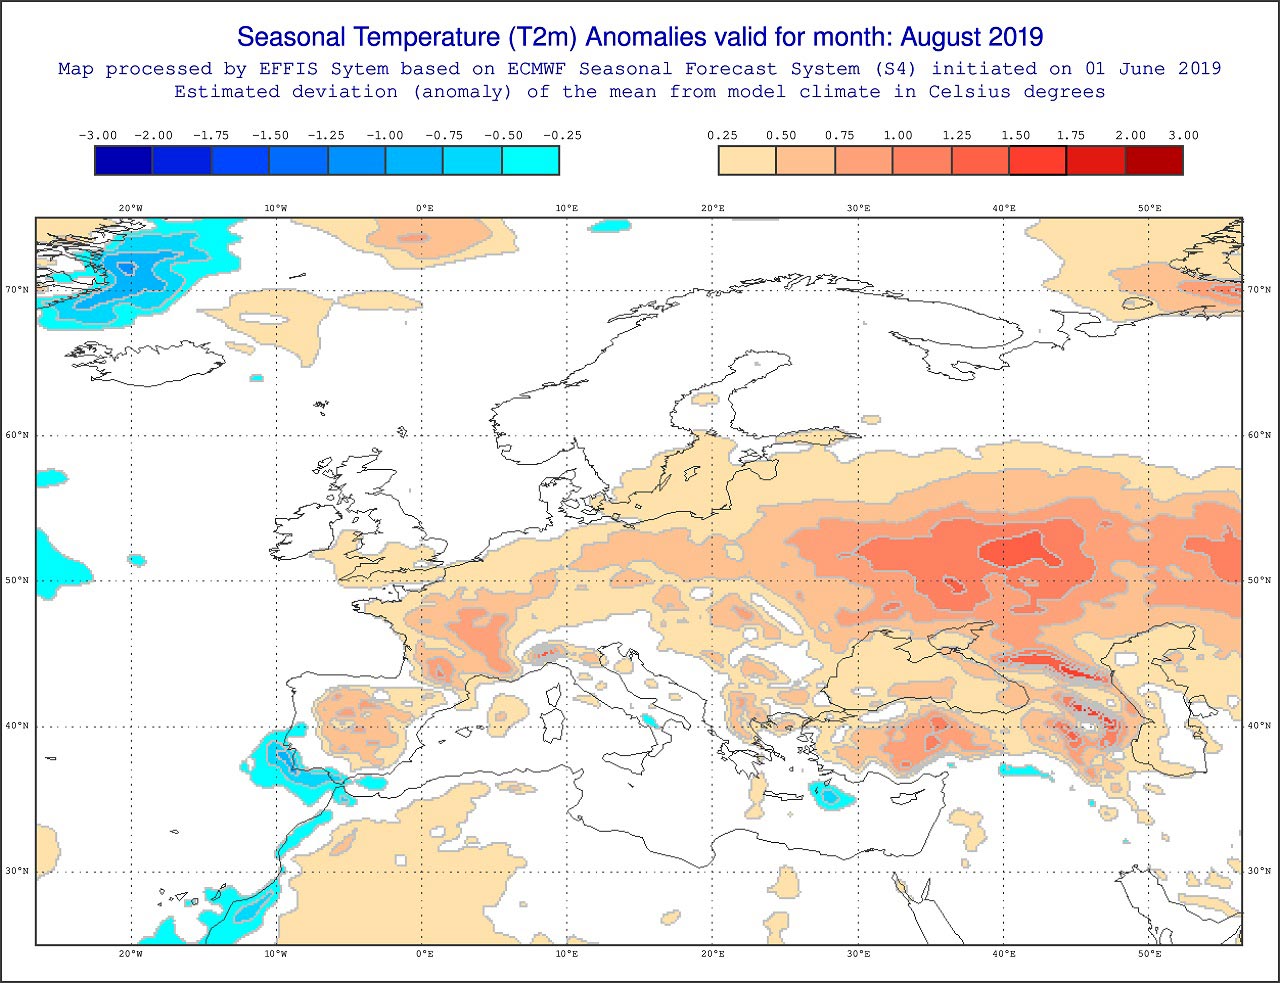 Tendenza meteo agosto 2019 - effis.jrc.ec.europa.eu.jpg